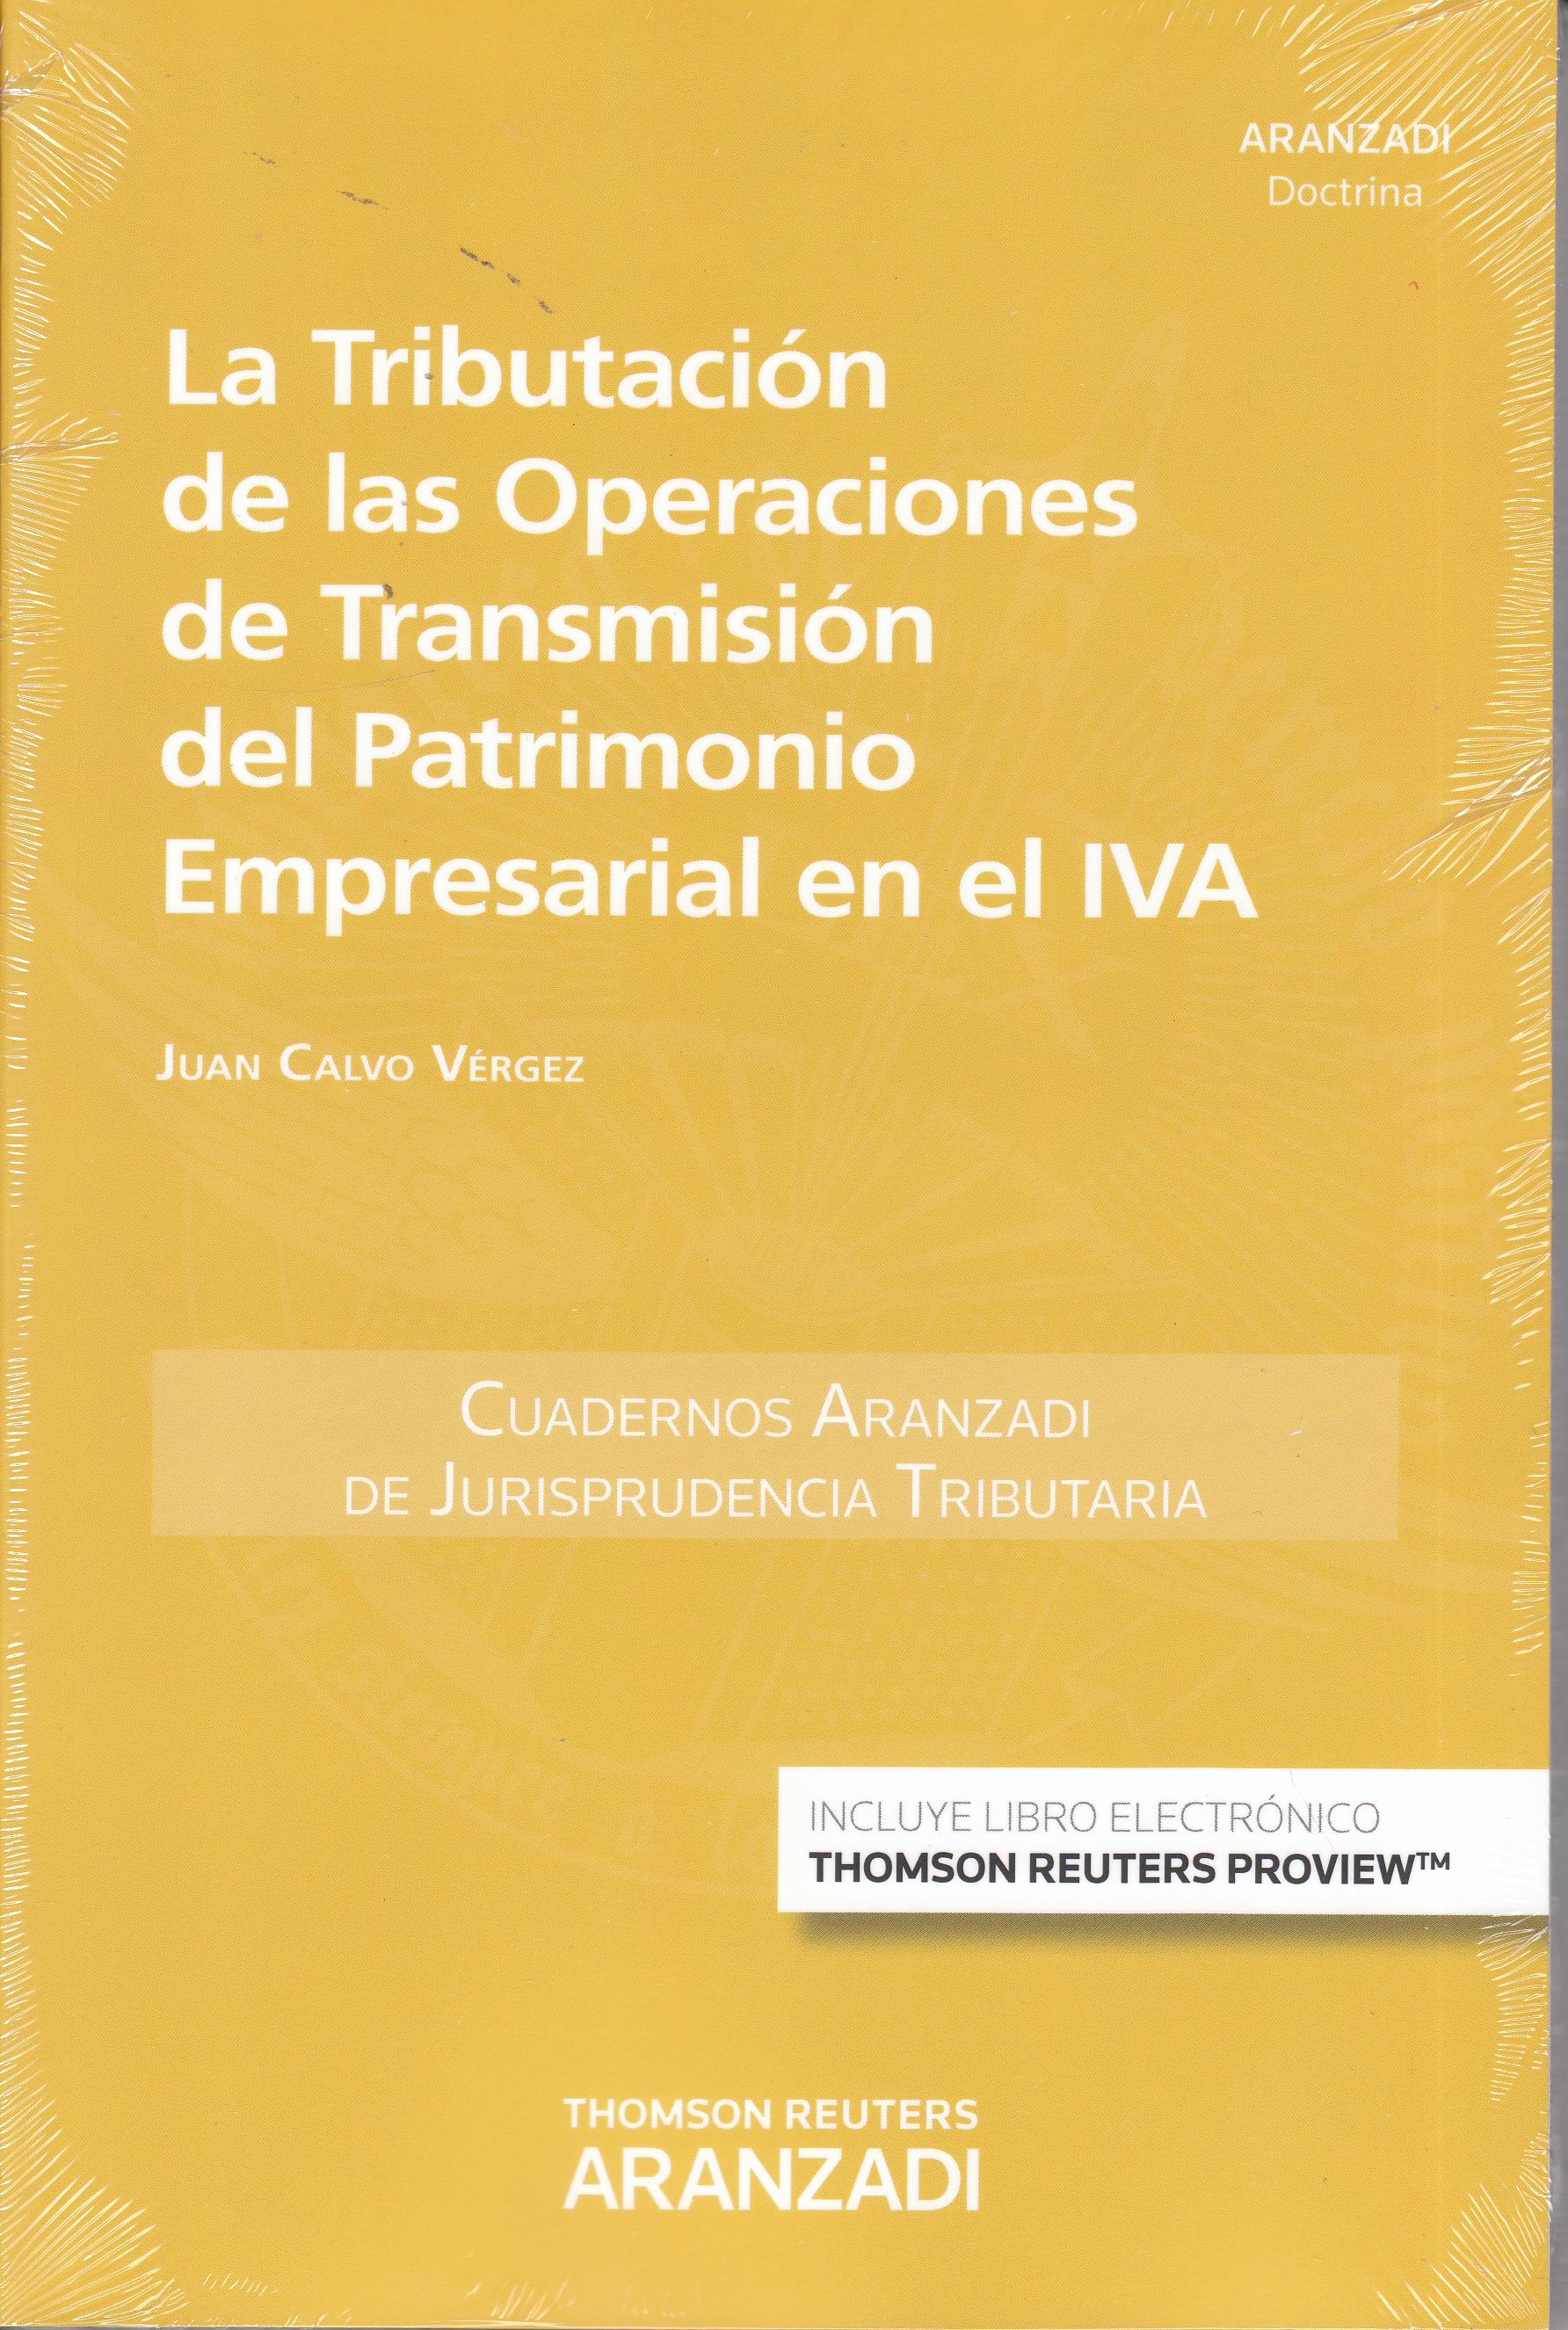 La Tributación de las Operaciones de Transmisión del Patrimonio Empresarial en el IVA